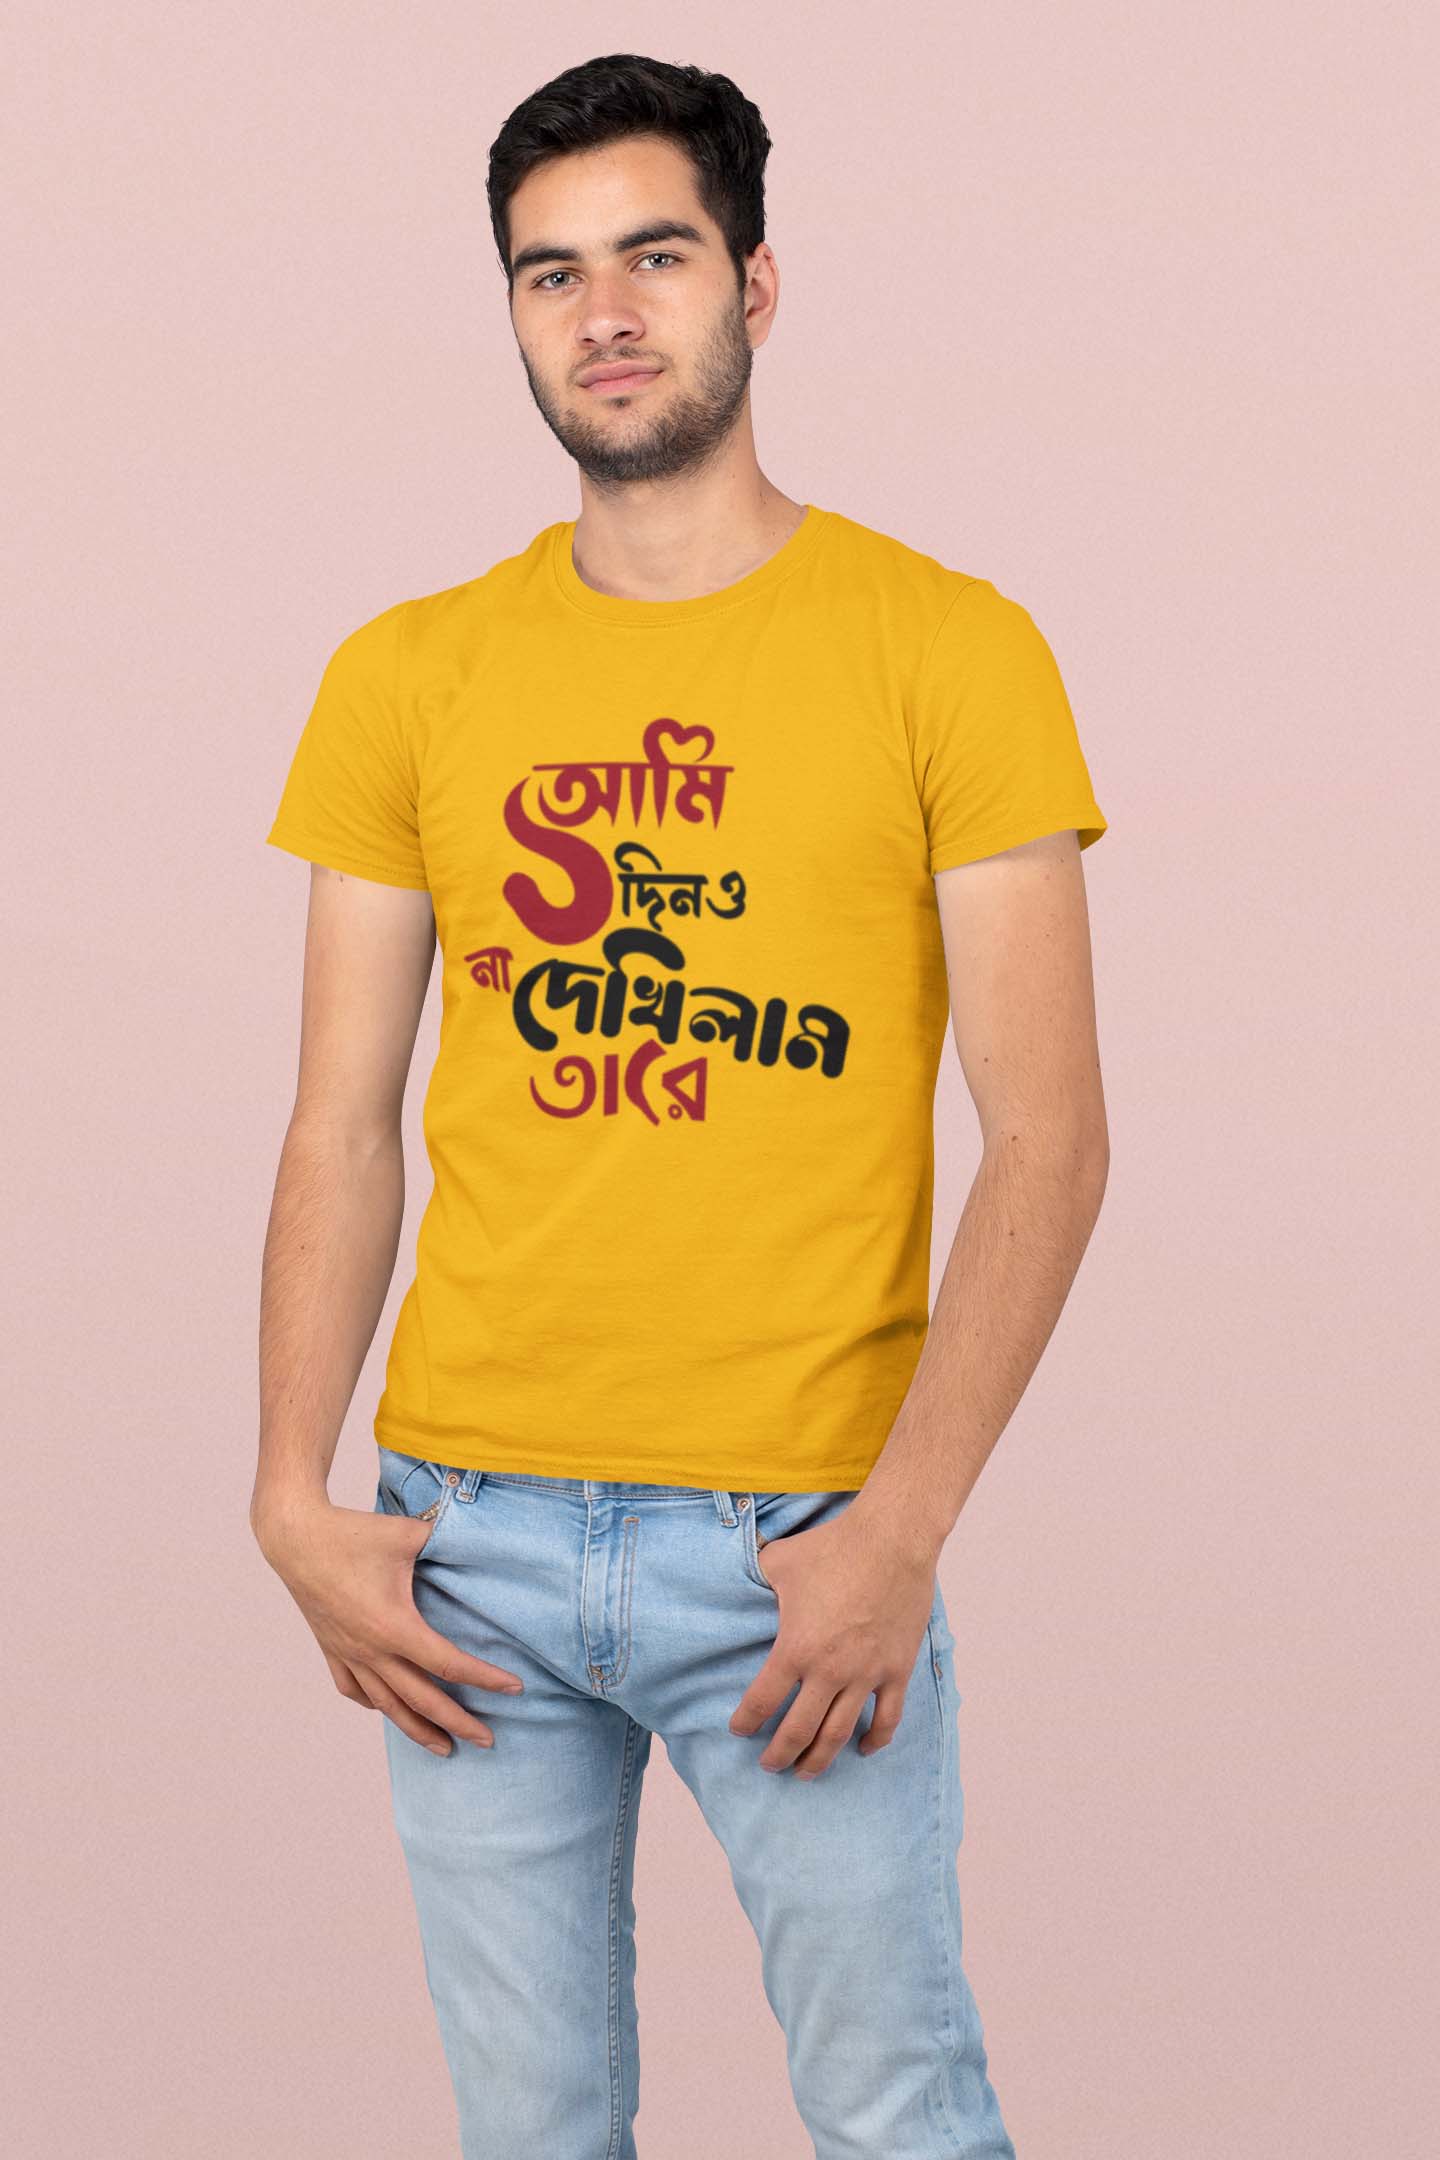 Ami ek dino na dekhilam tare Bengali T shirt